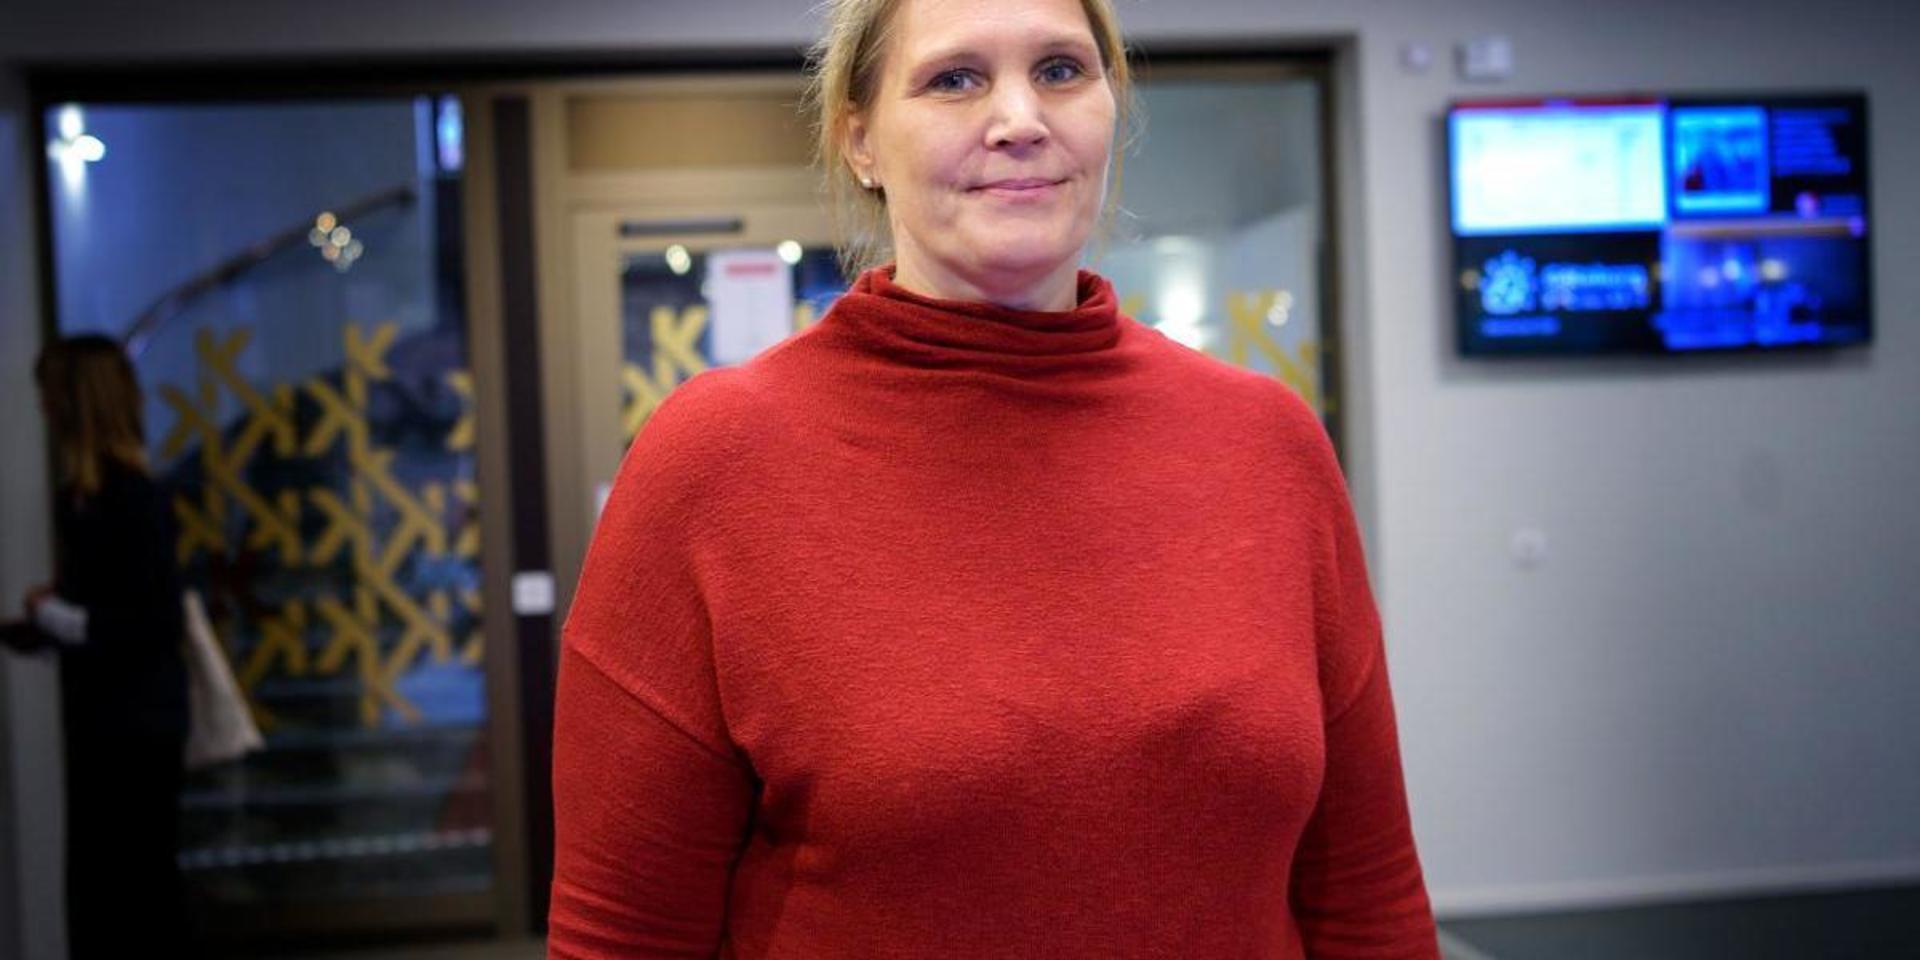 Jennie Anttila